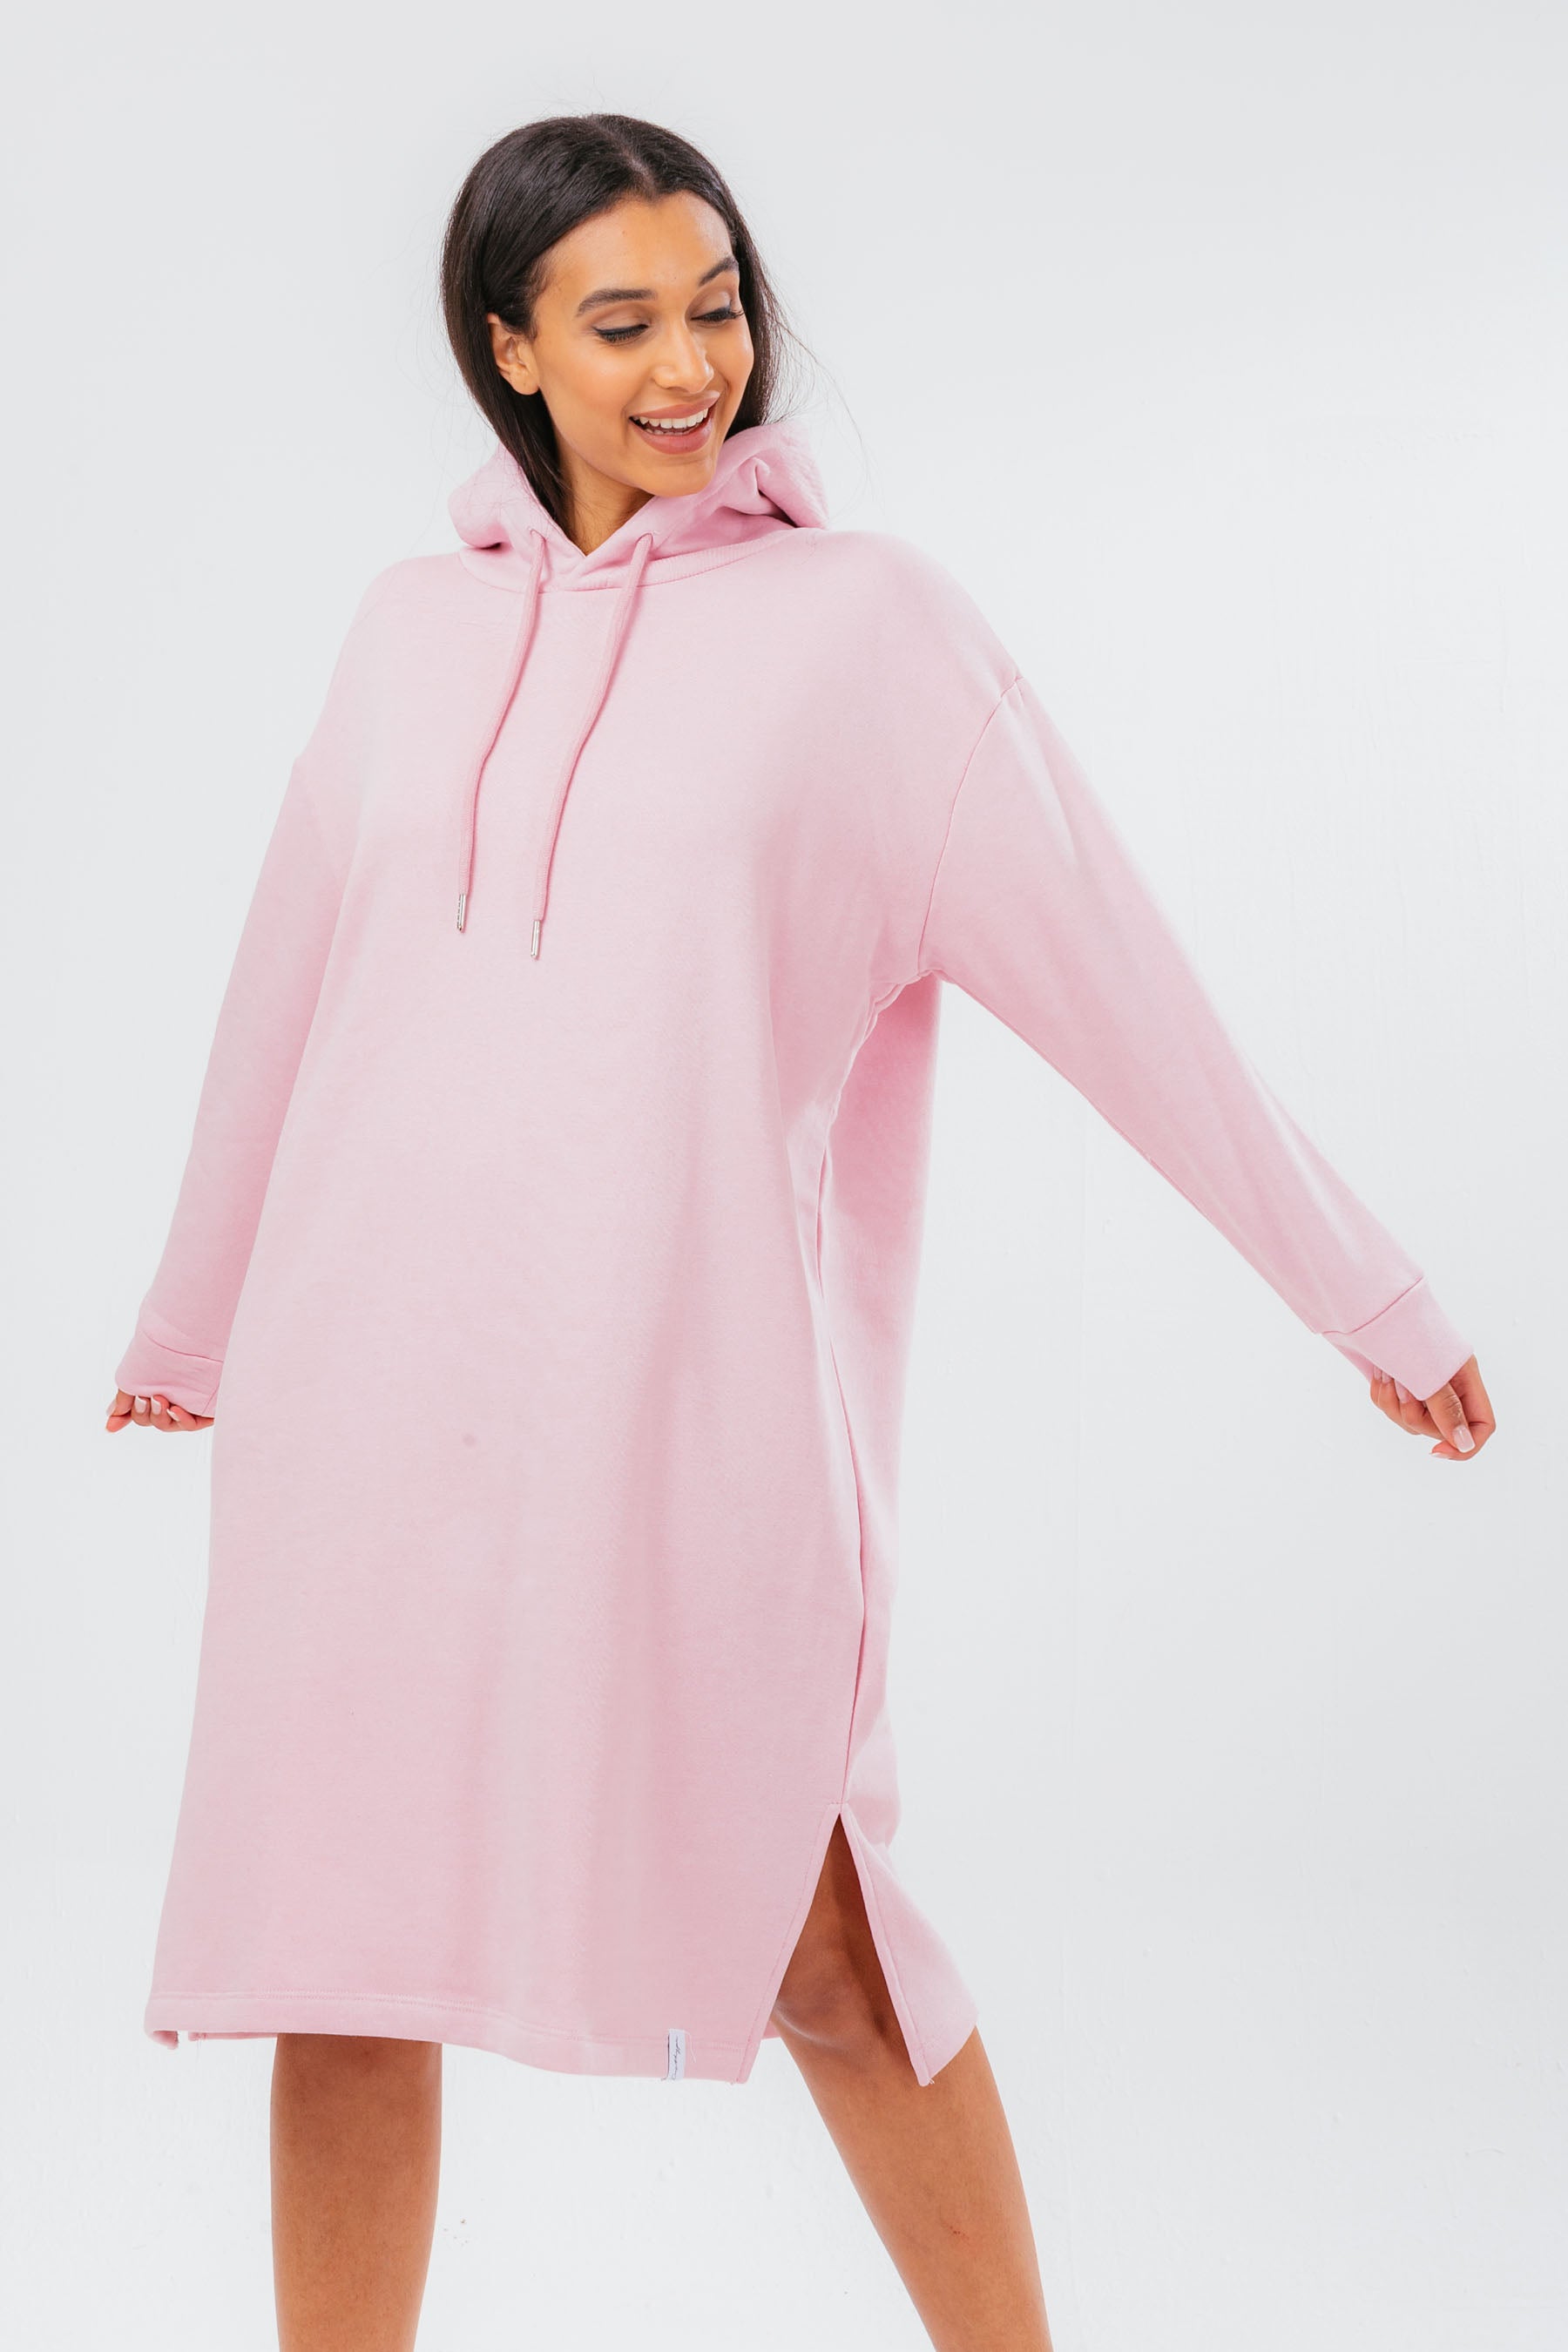 hype pink oversized women’s hoodie dress